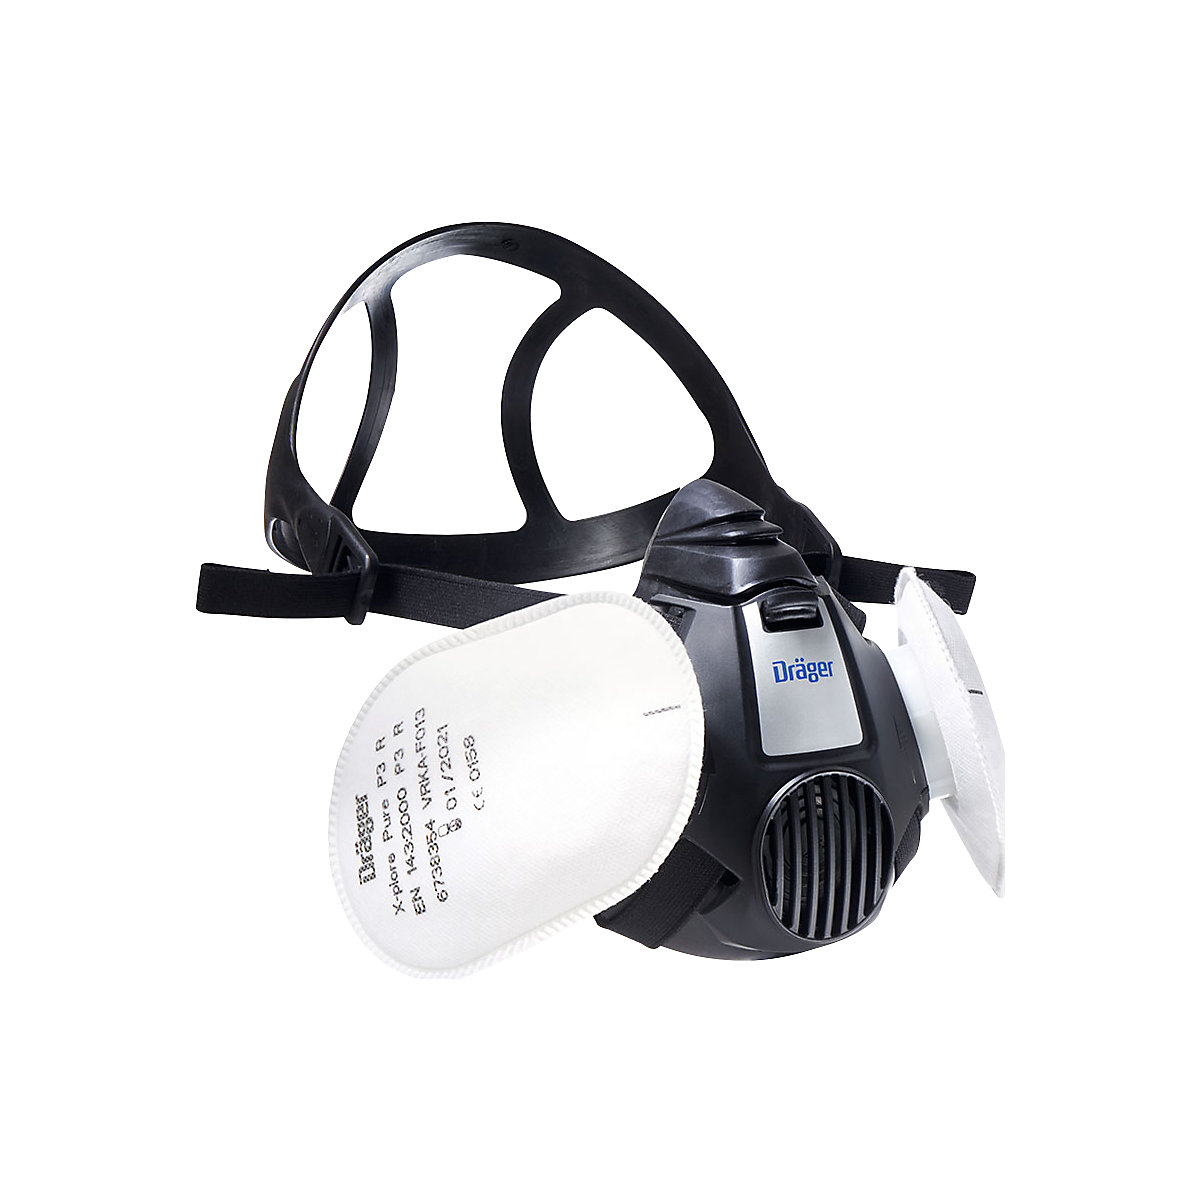 Set Halbmaske X-plore® 3300 inkl. 2 Filter für Lackierarbeiten Dräger